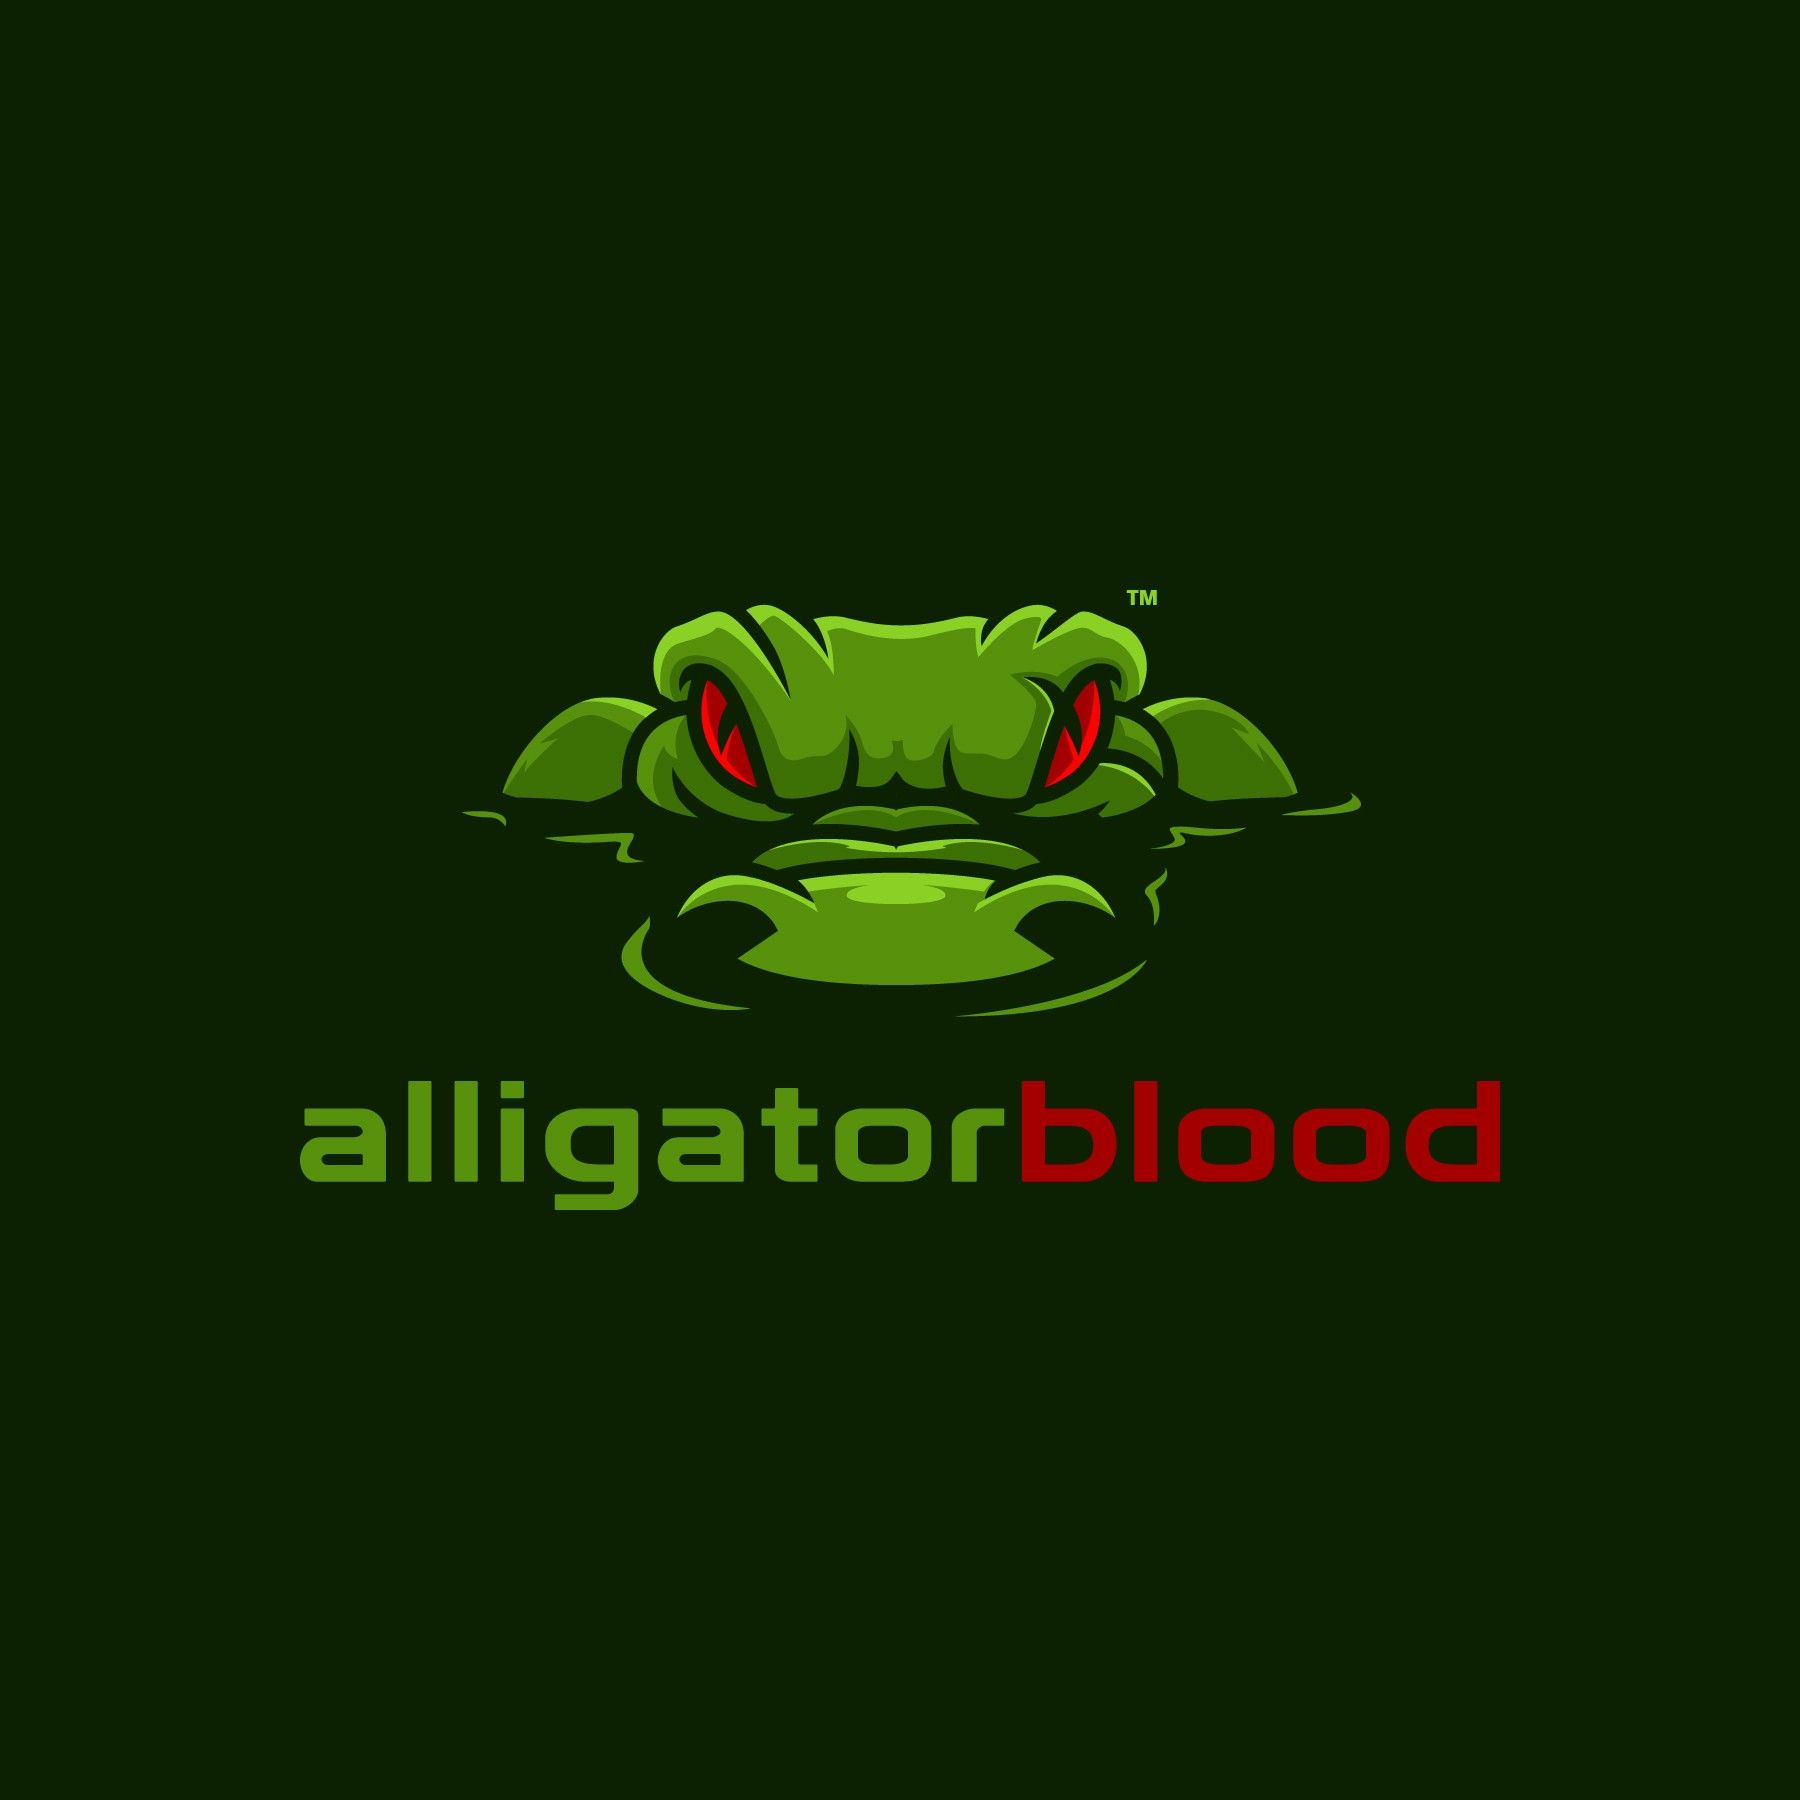 Alligator Logo - Alligator Blood logo | Logos Inspiration | Logos, Logo design, Logo ...